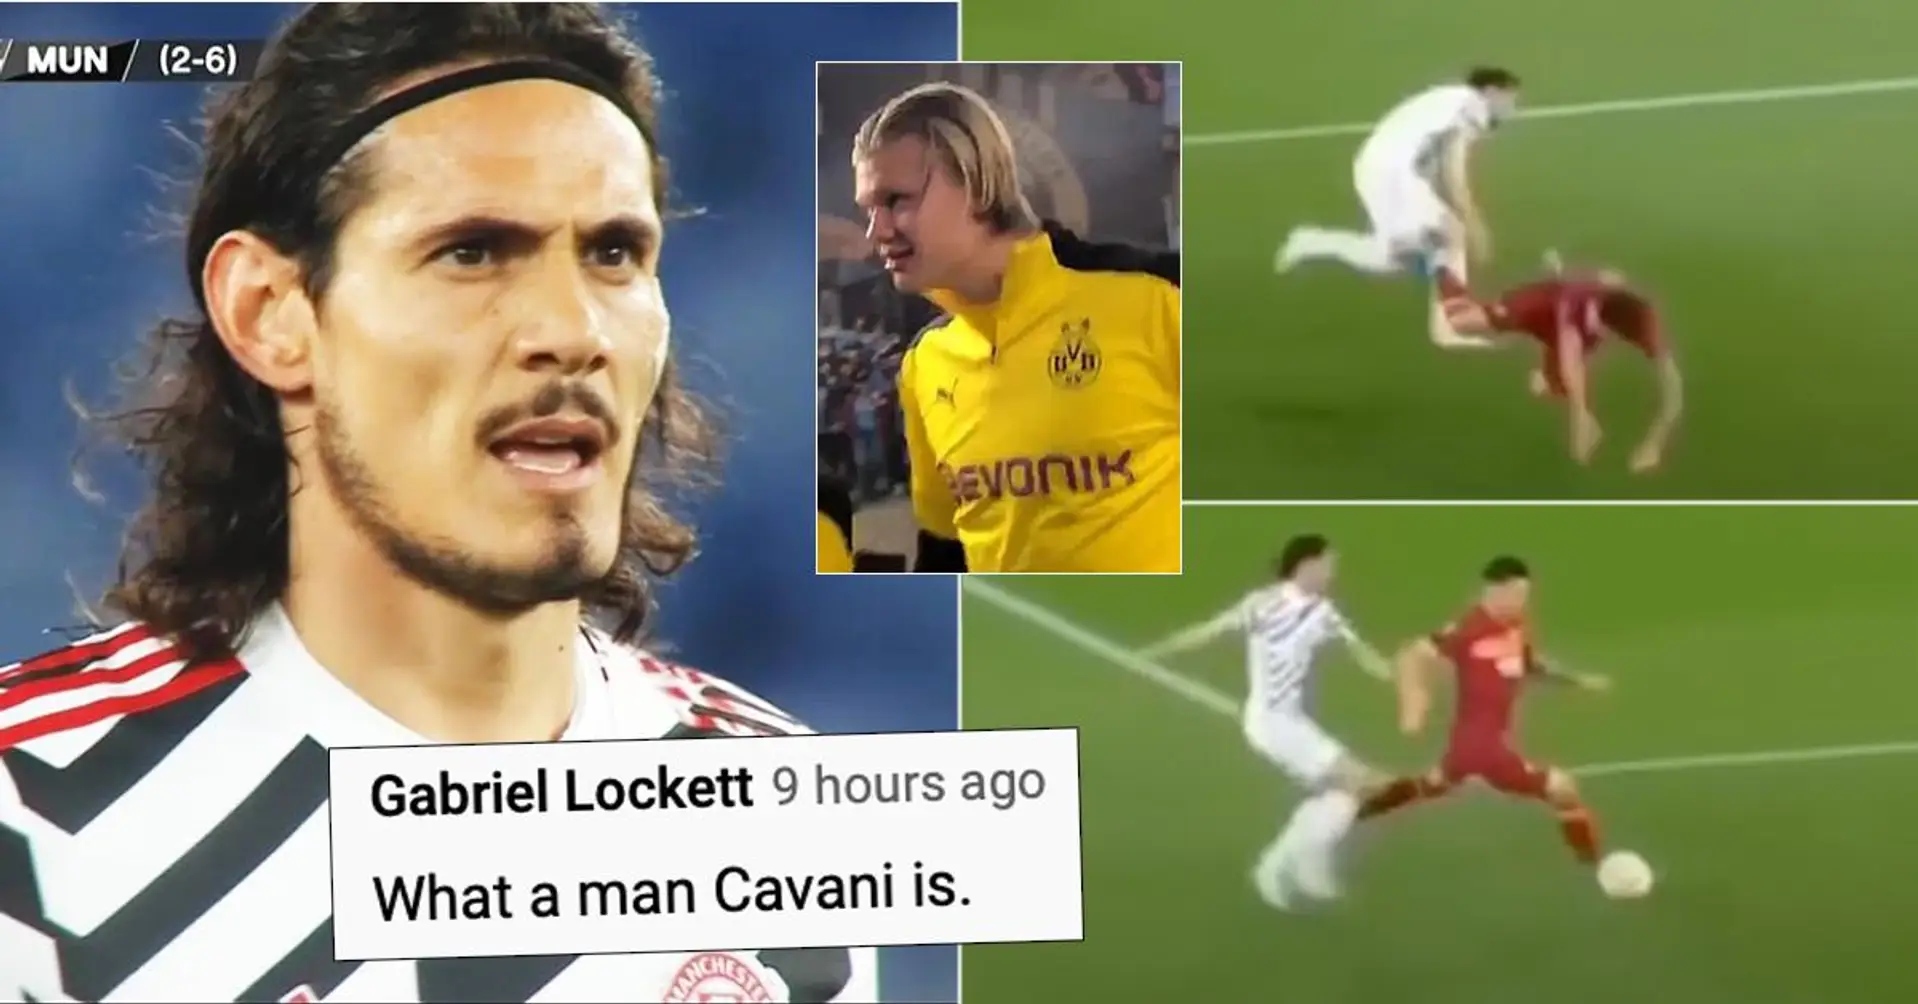 LA CLASSE: Le geste incroyable de Cavani contre l'AS Roma devient viral - Ce que les fans anglais disent des ex-stars du PSG Thiago Silva et Cavani